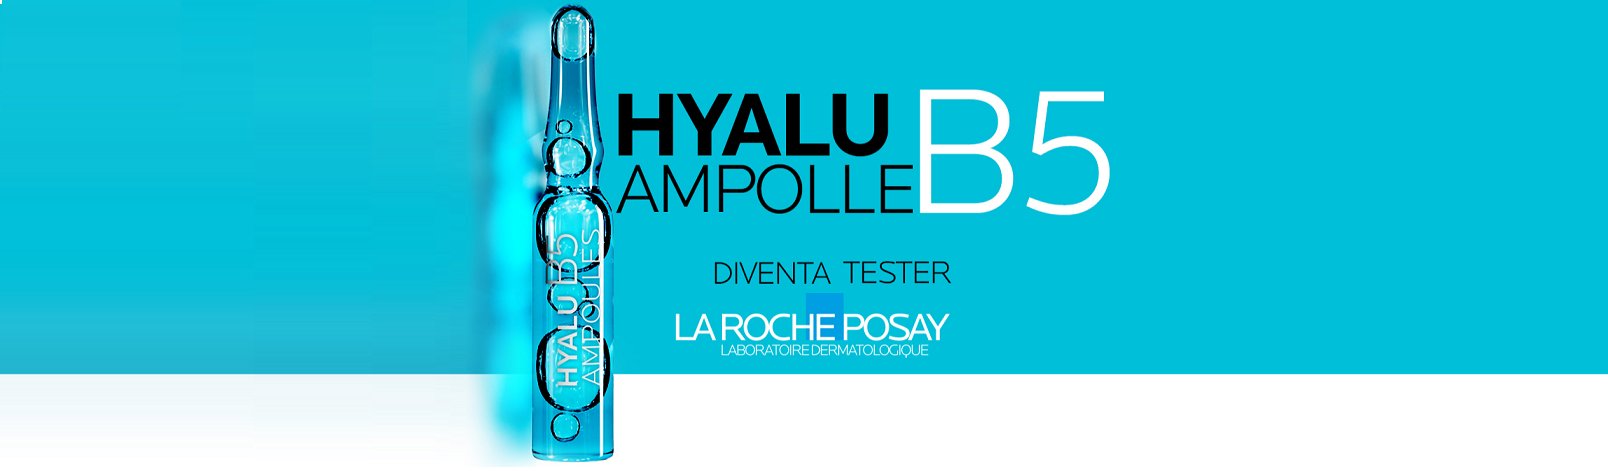 Tester Hyalu B5 Ampolle La Roche Posay